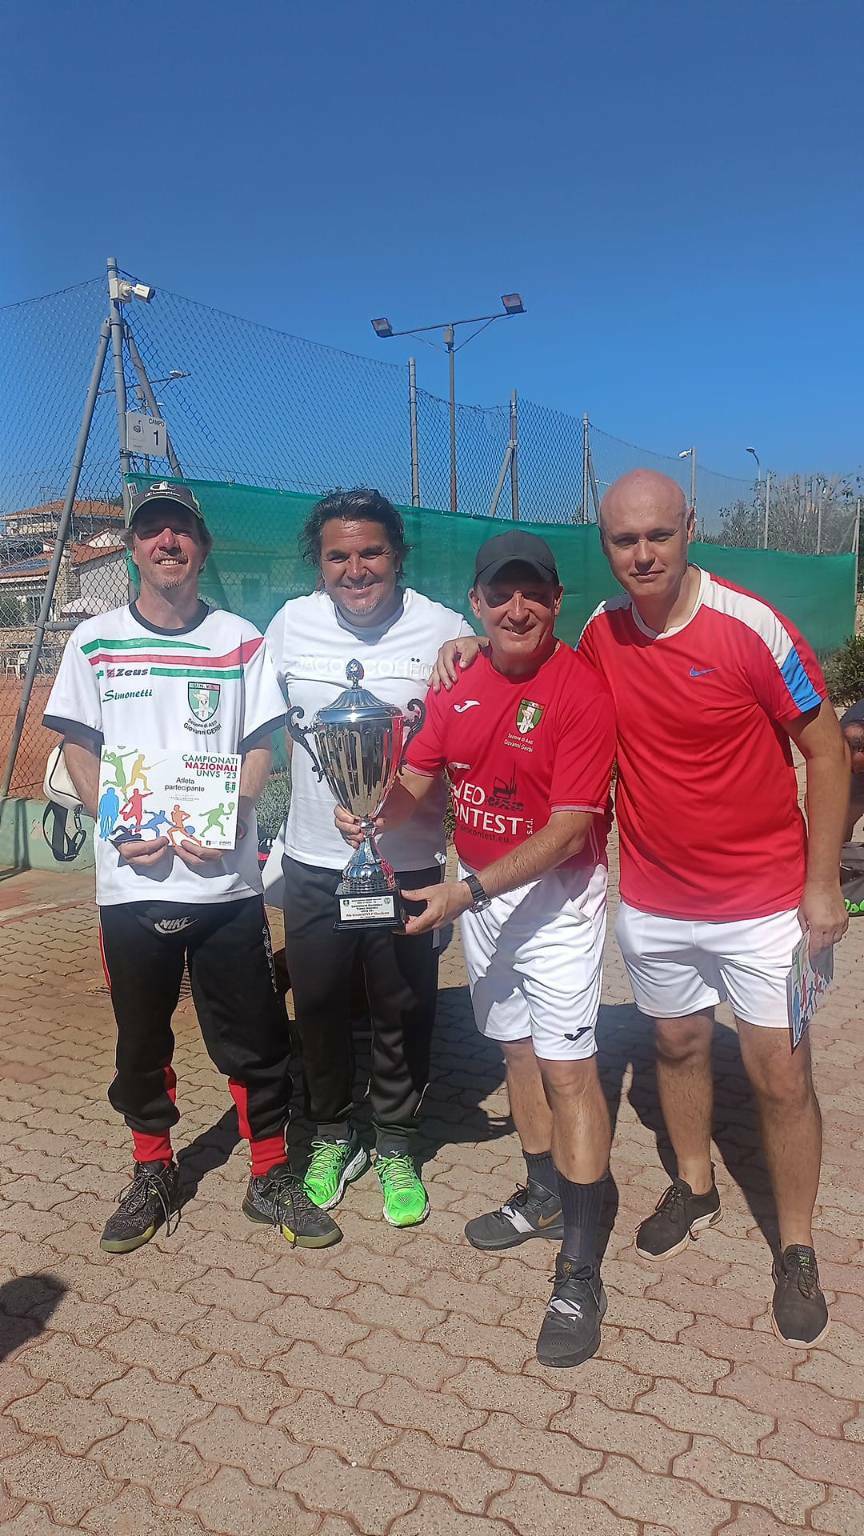 Campionati Italiani di Tennis Over 50 veterani asti